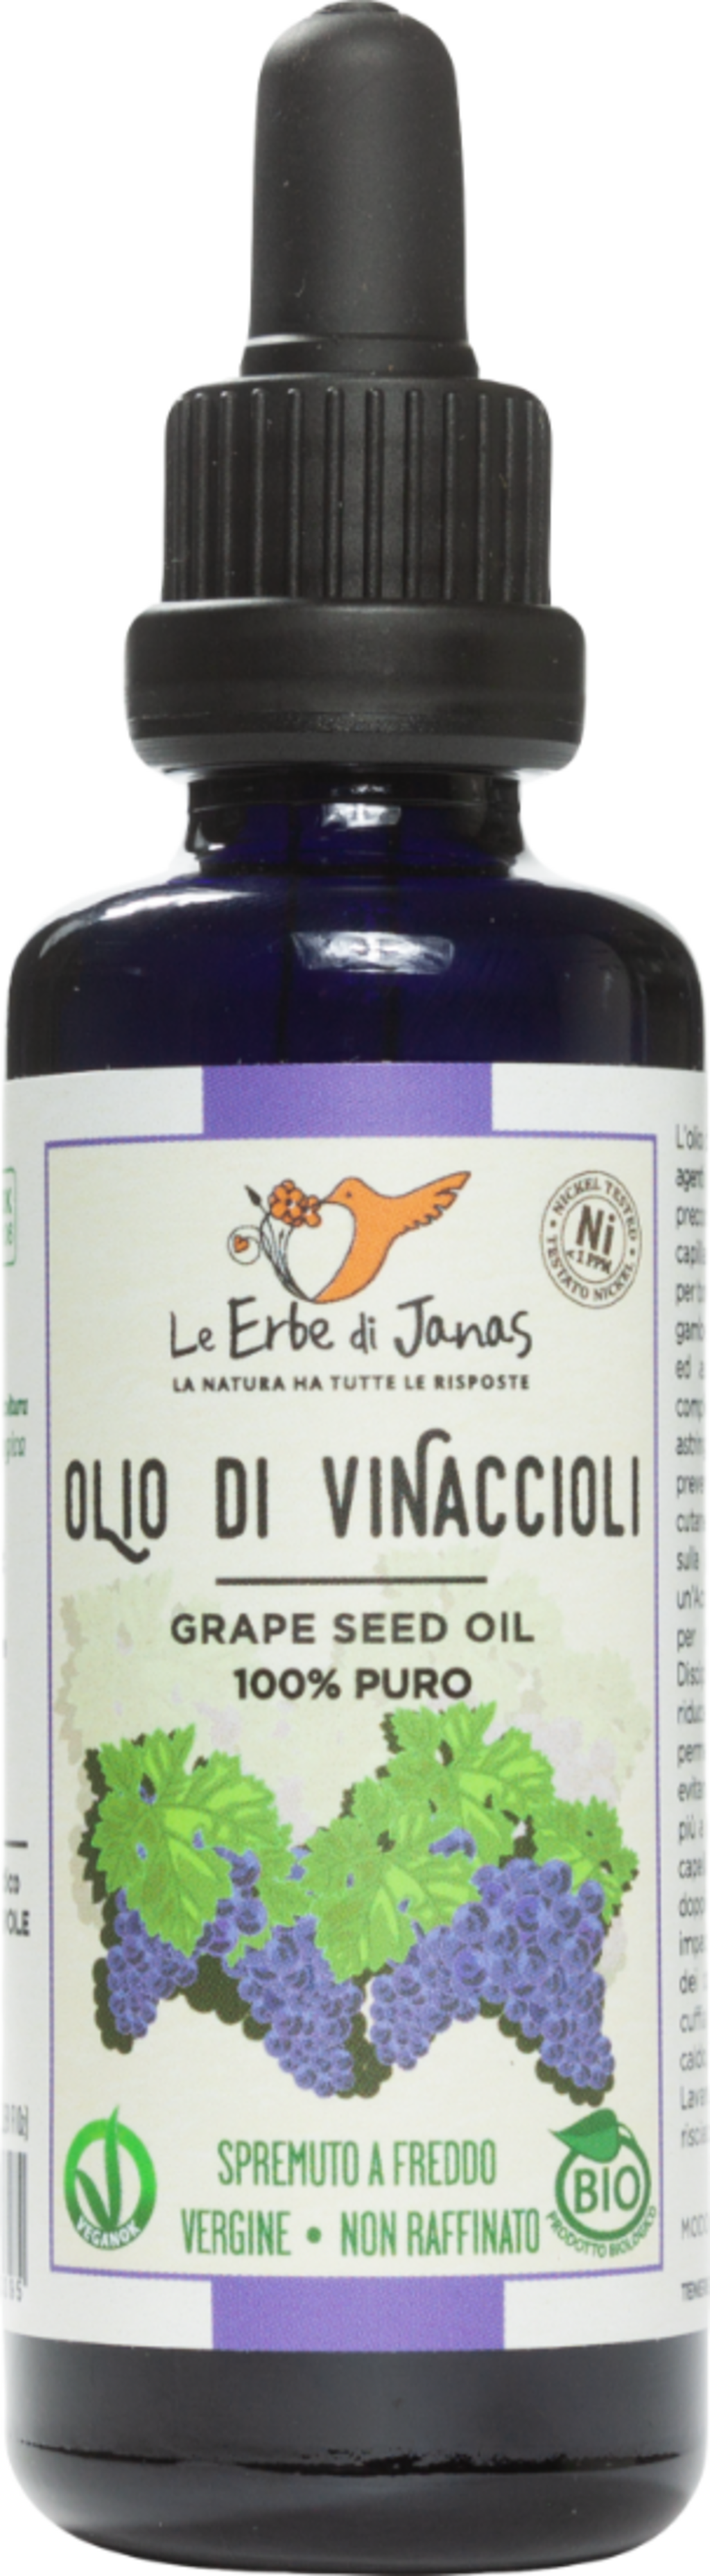 Le Erbe di Janas Olio di Vinaccioli - 50 ml